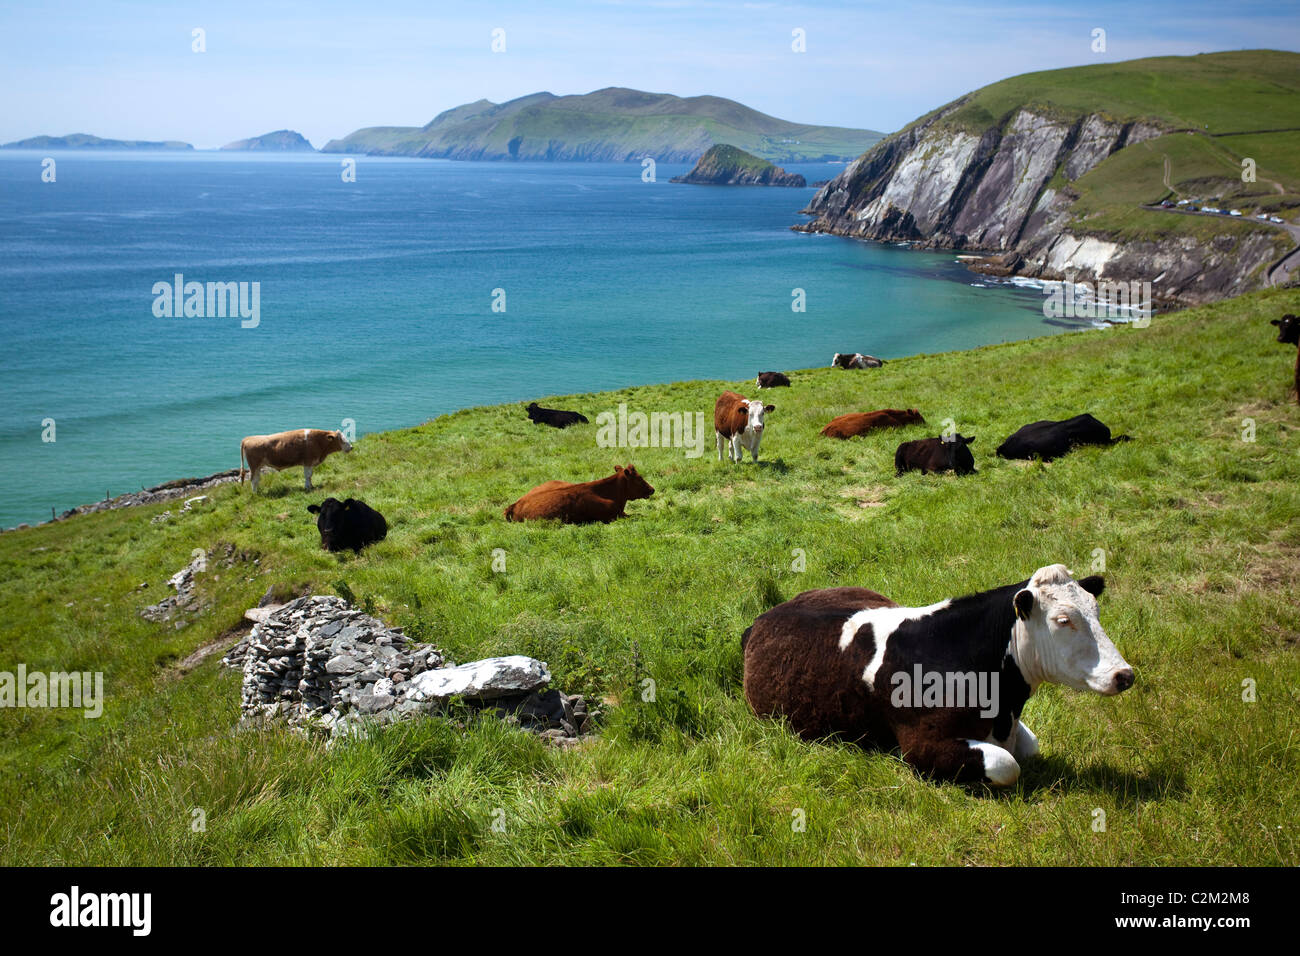 Le mucche in appoggio sopra la baia Coumeenoole, penisola di Dingle, nella contea di Kerry, Irlanda. Foto Stock